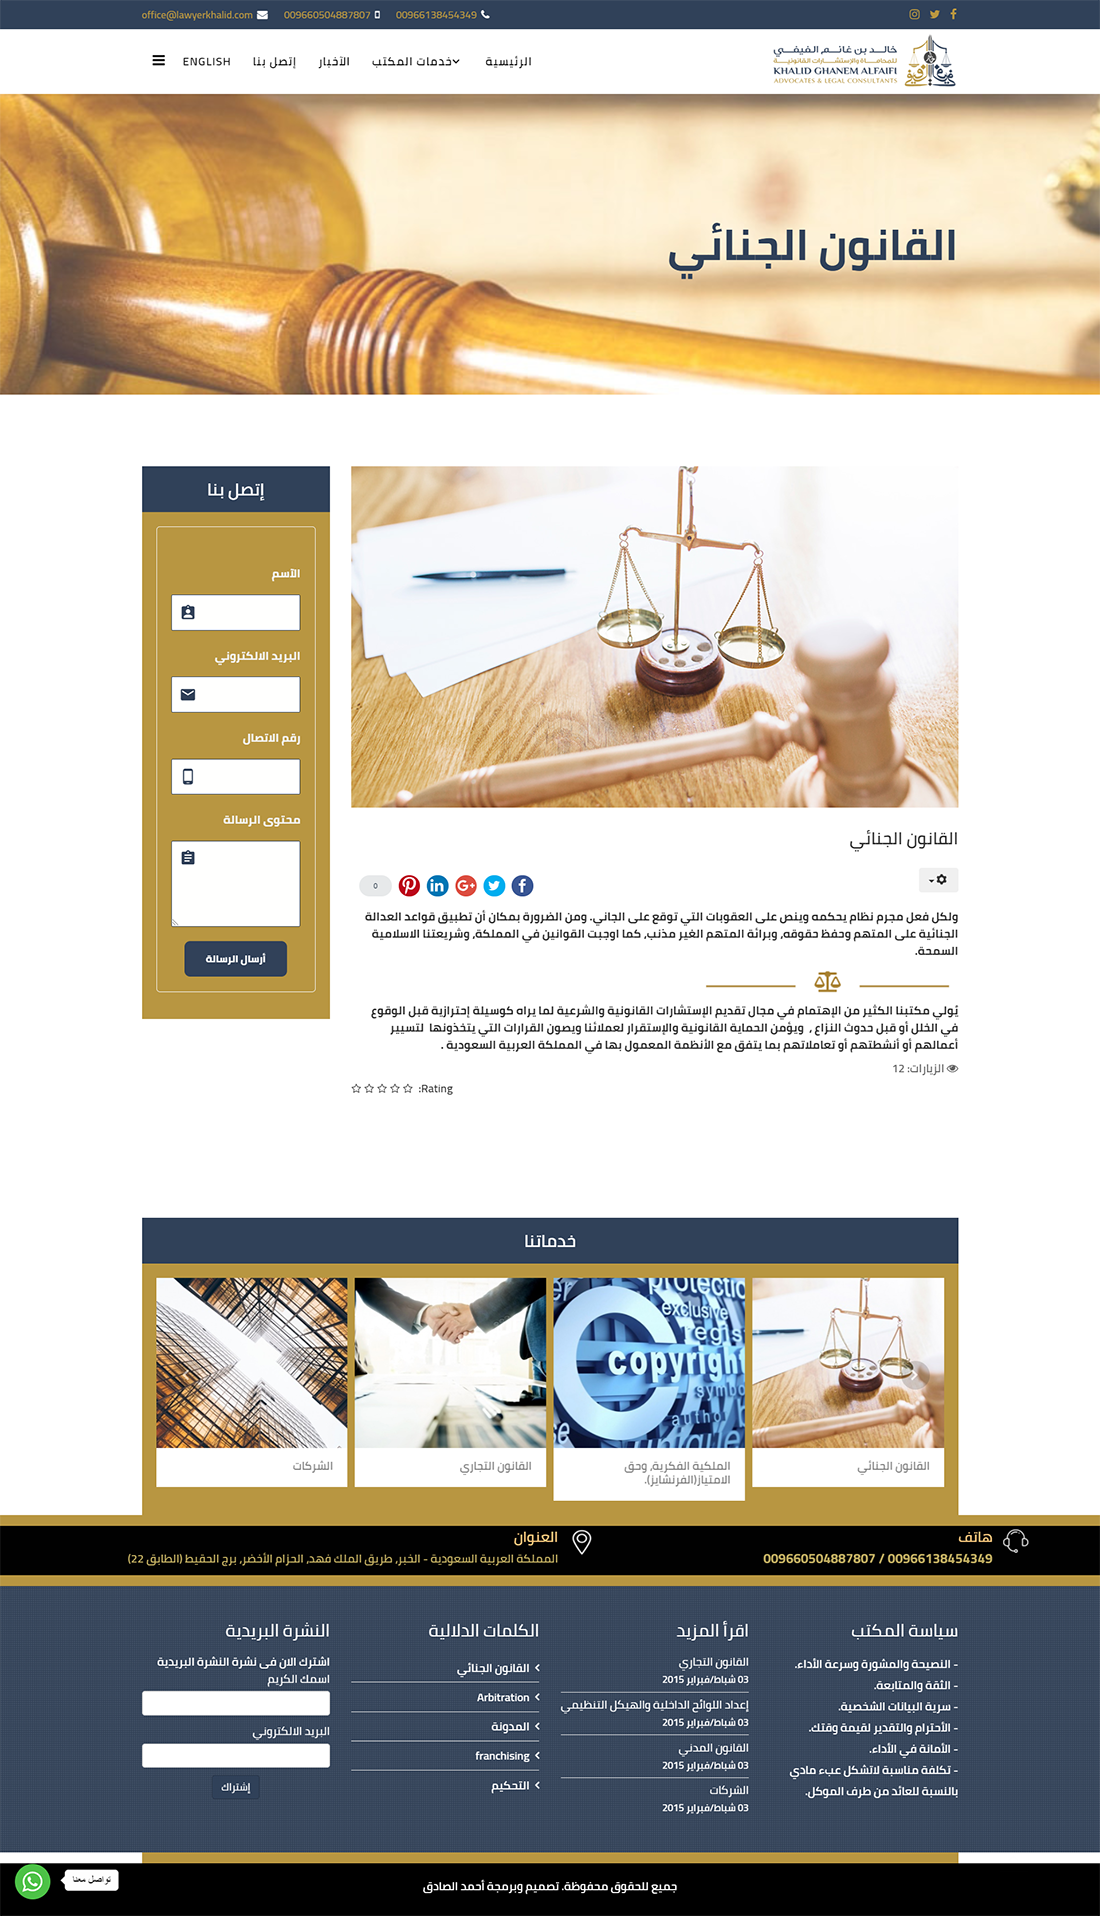 تصميم موقع الكتروني للمحامى خالد الفيفي في الرياض السعودية